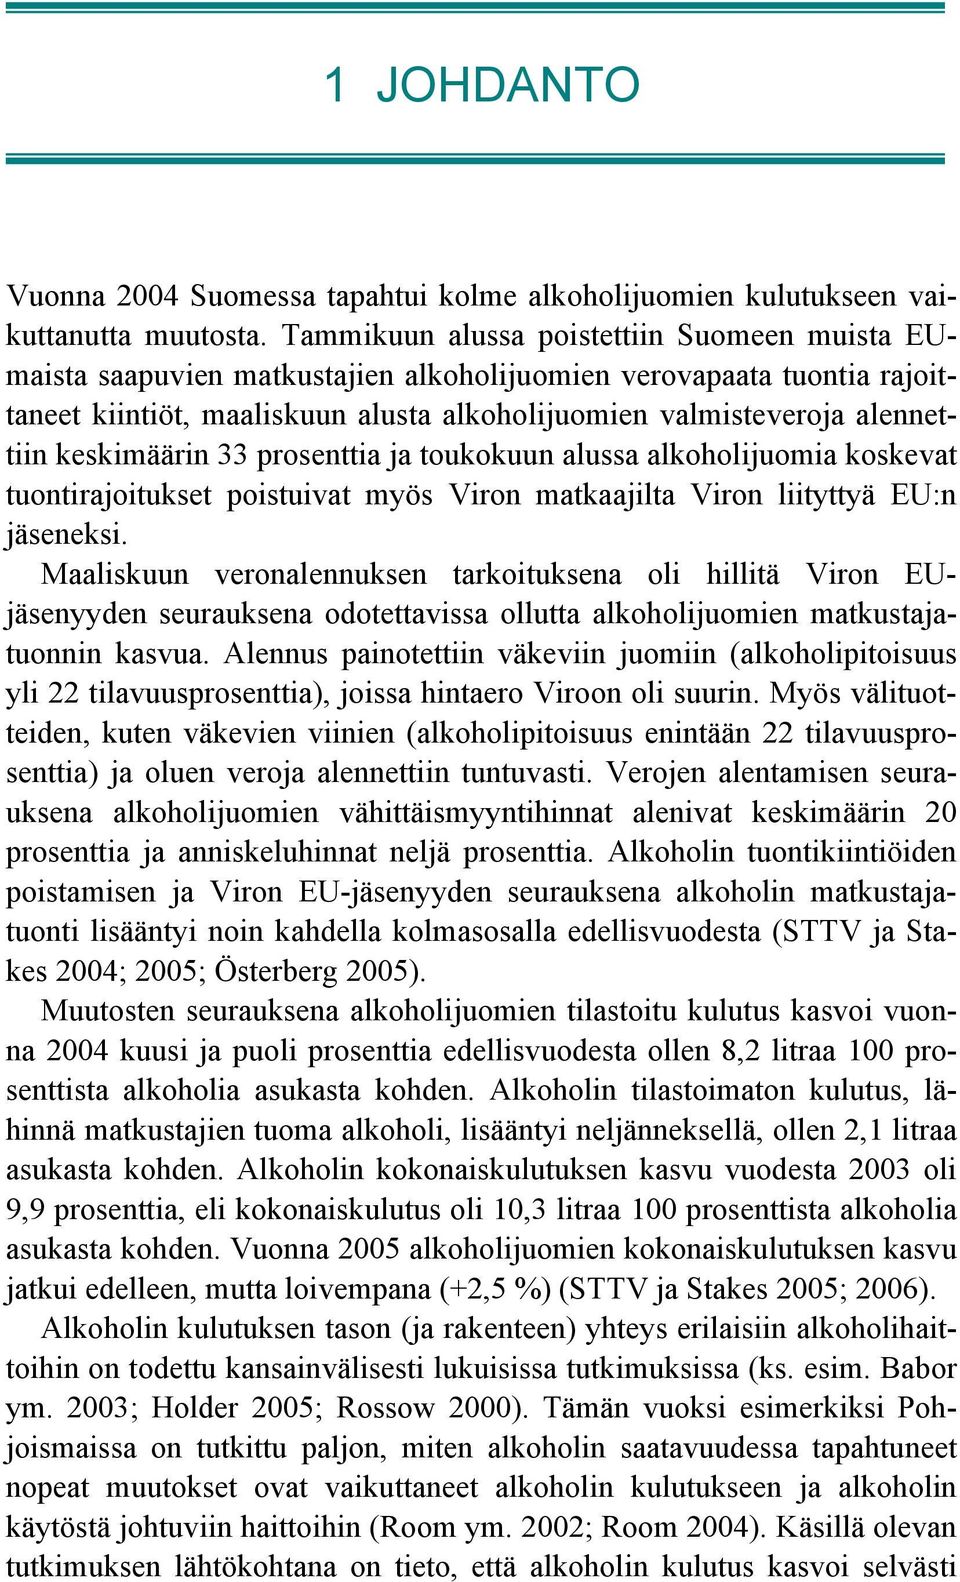 keskimäärin 33 prosenttia ja toukokuun alussa alkoholijuomia koskevat tuontirajoitukset poistuivat myös Viron matkaajilta Viron liityttyä EU:n jäseneksi.